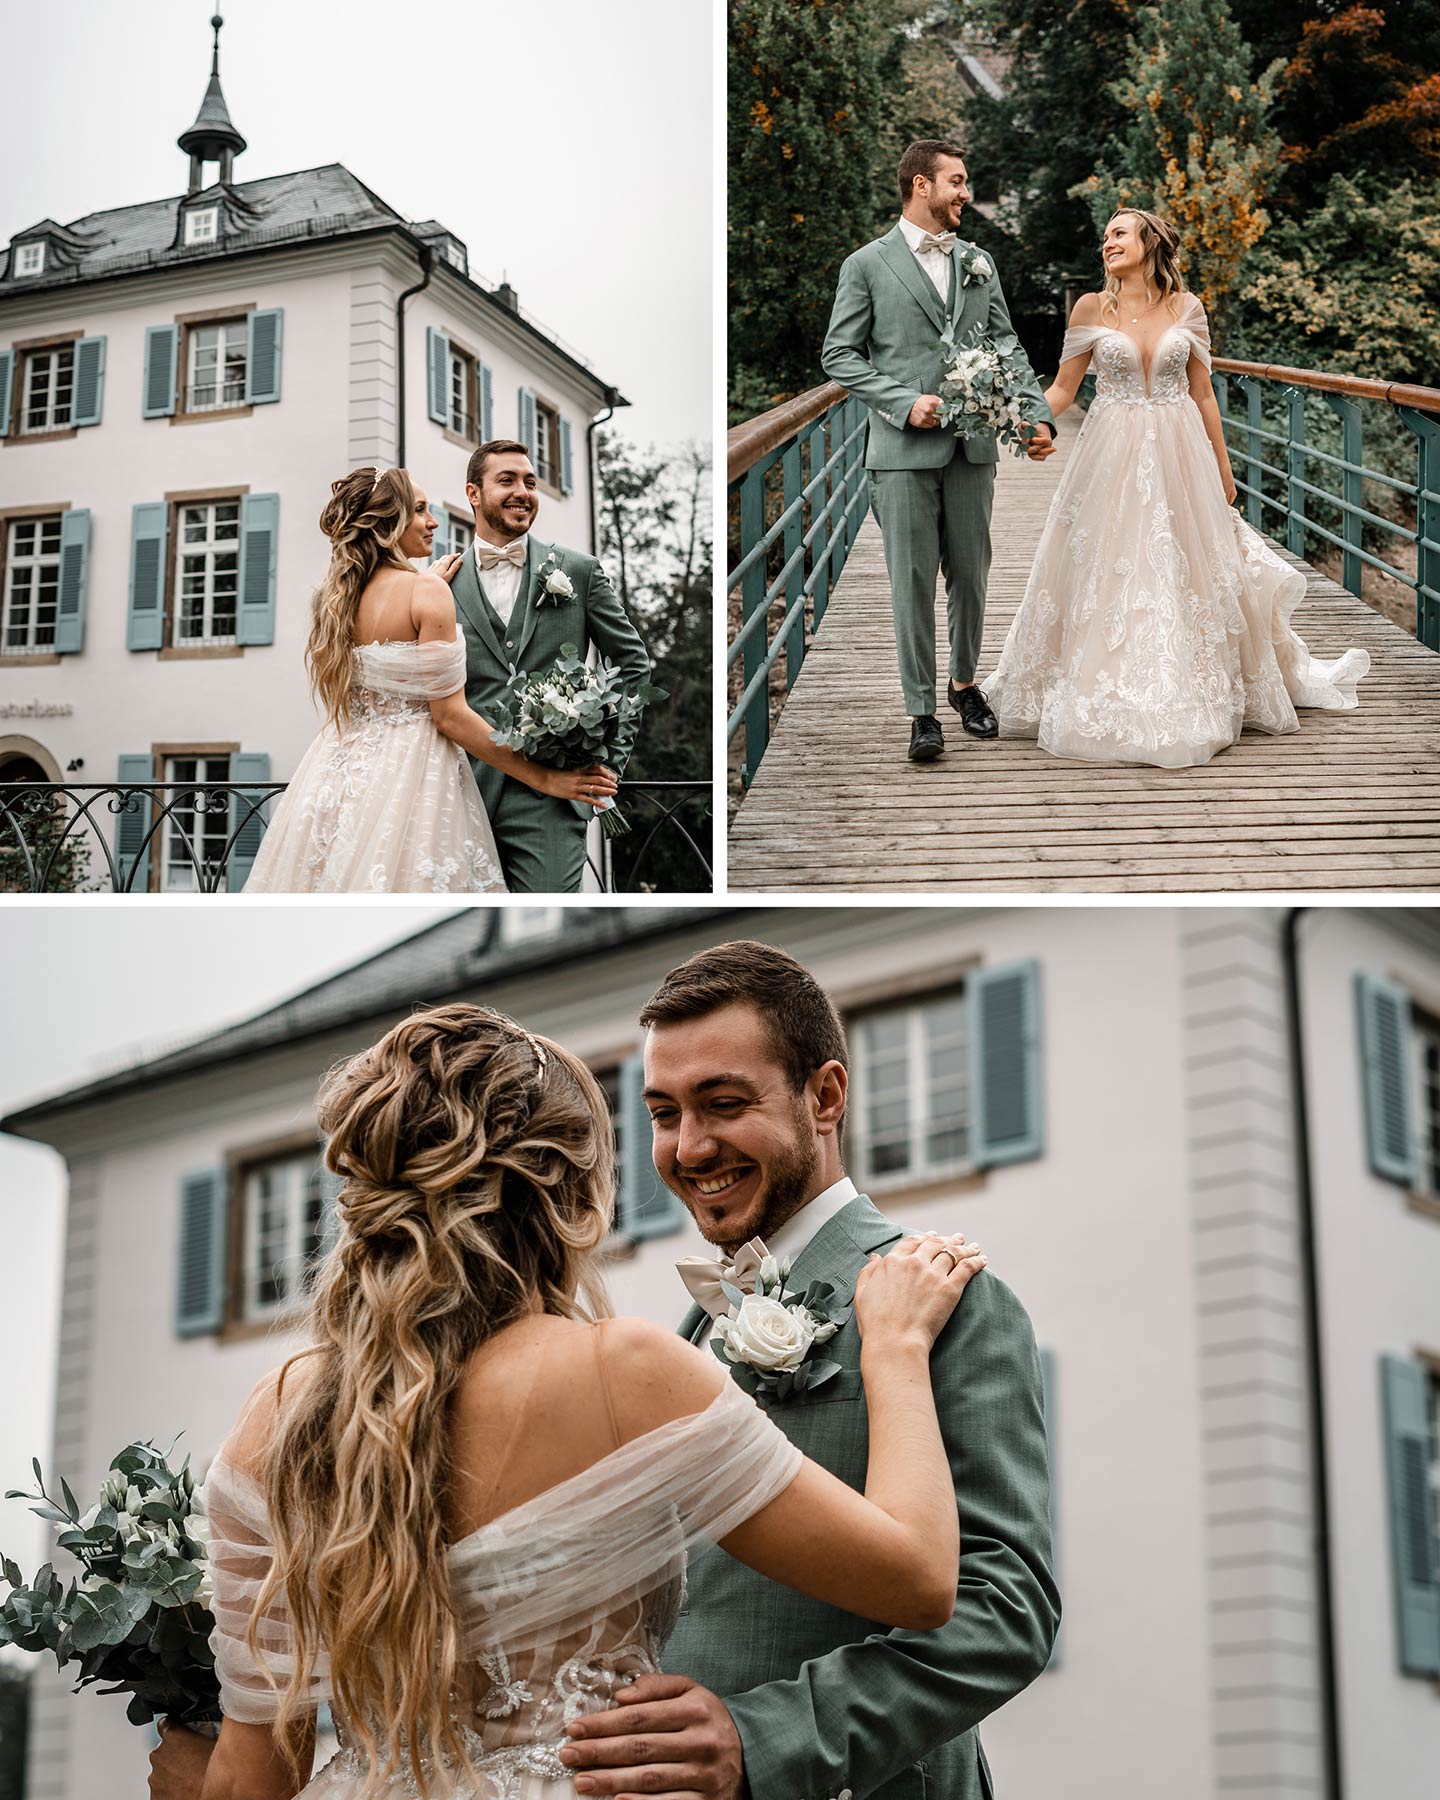 Die Braut und der Bräutigam werden vor dem weißen Gebäude mit Fensterläden in Türkis auf einer Brücke im Garten fotografiert.